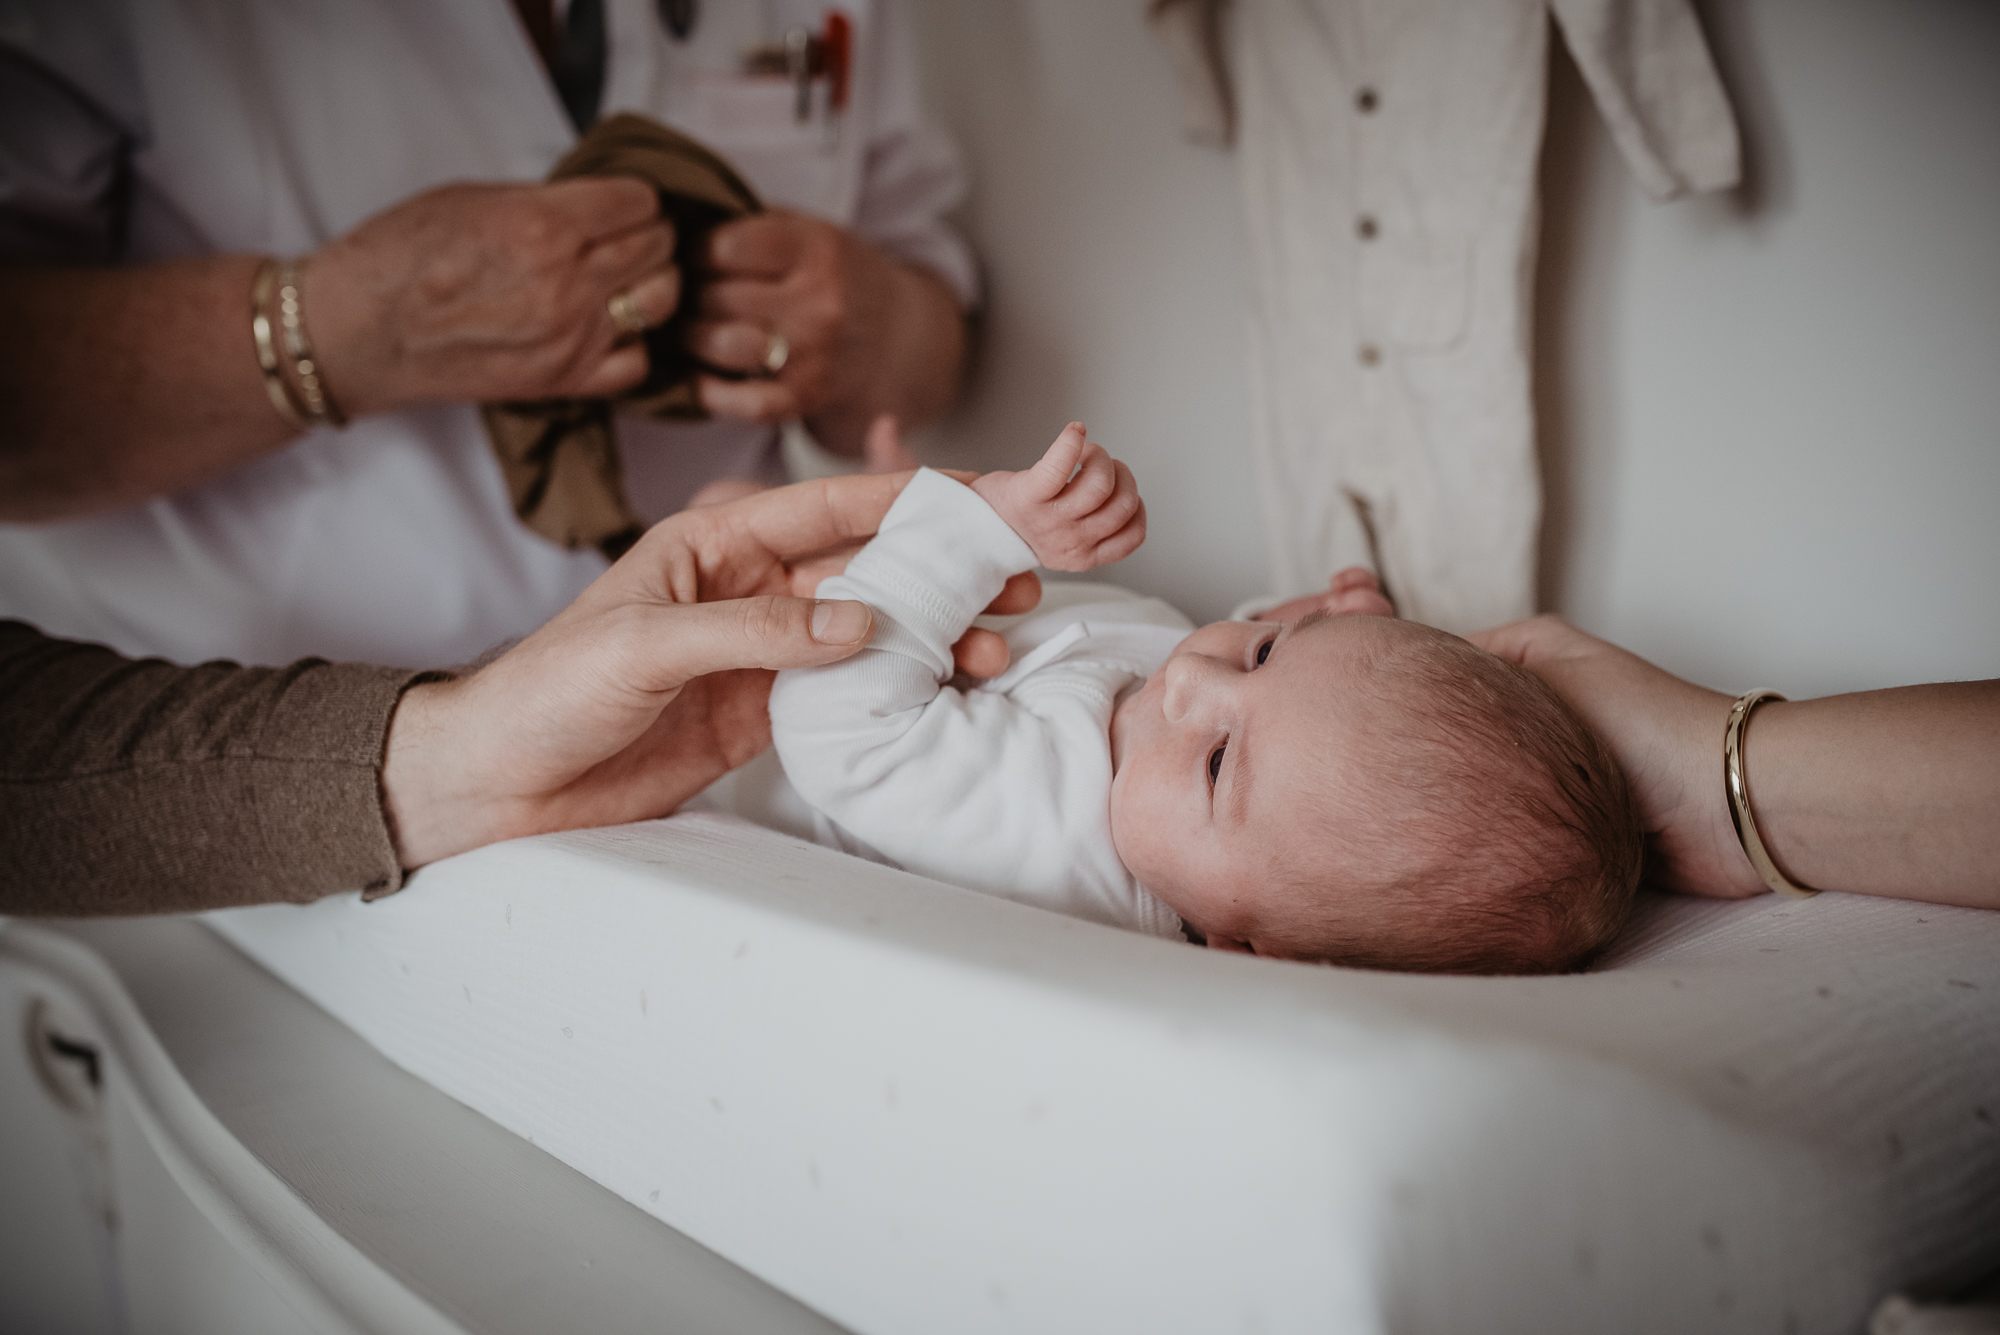 Het verschonen van de newborn op het aankleedkussen. Bedrijfreportage door bedrijfsfotograaf Nickie Fotografie uit Friesland.